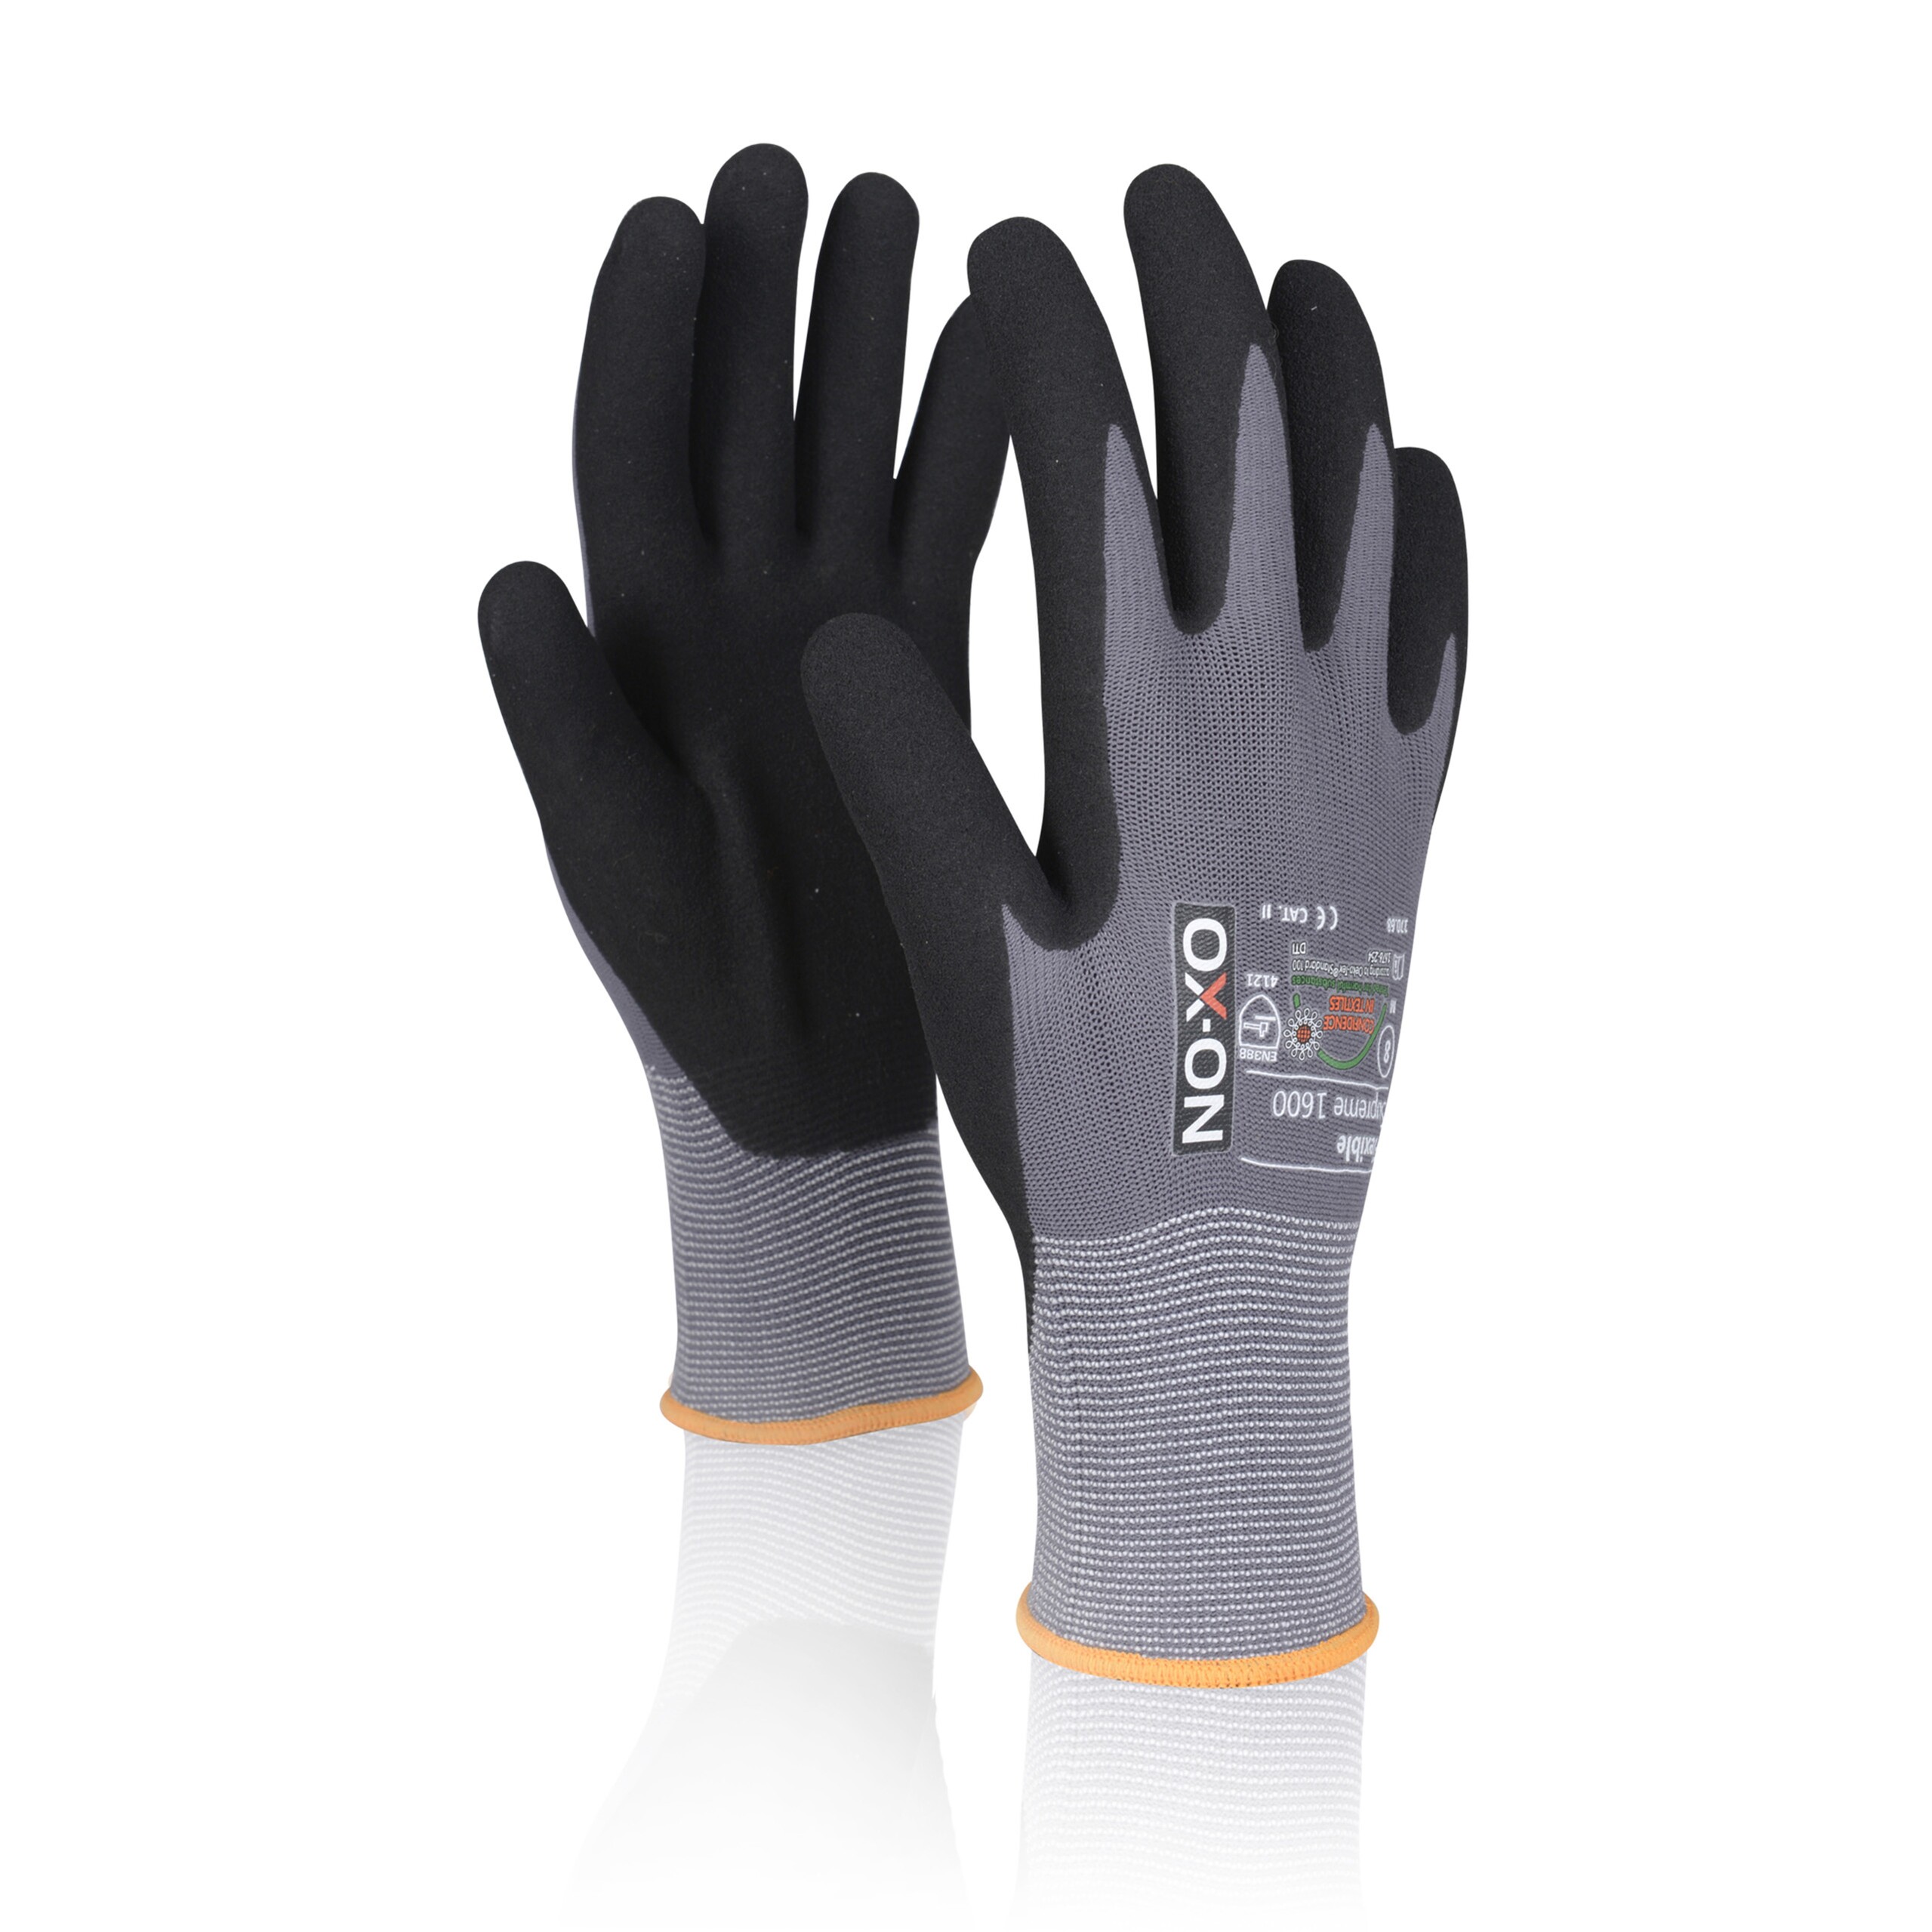 Une paire de gants de travail noirs et gris.